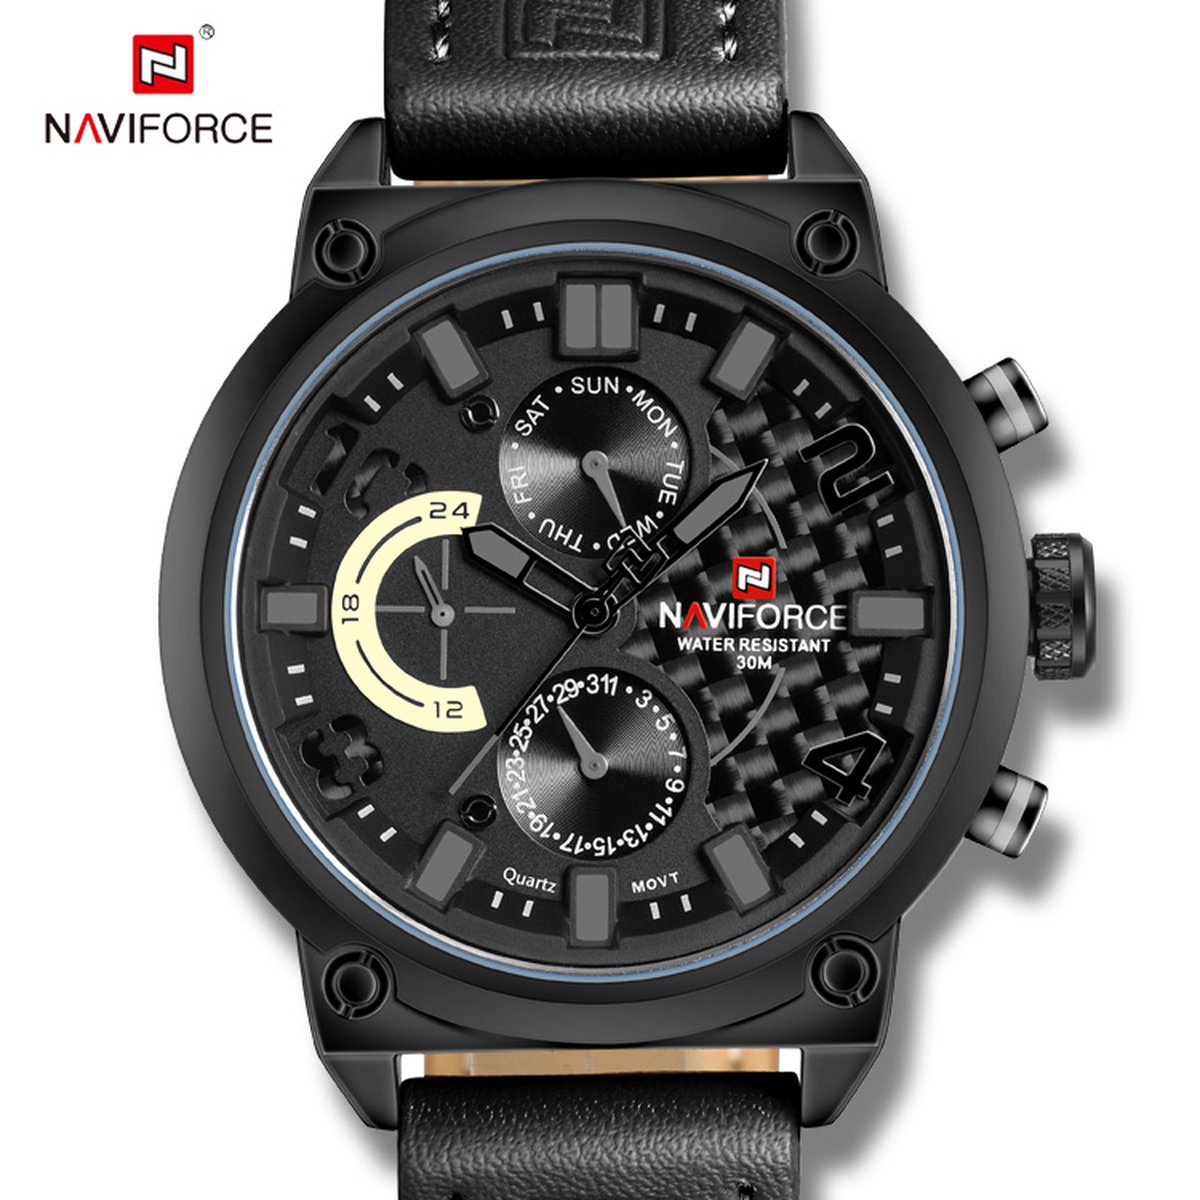 NAVIFORCE horloge voor mannen, met zwarte lederen polsband, zwarte uurwerkkast en grijze wijzerplaat ( model 9068L BGYB ), verpakt in mooie geschenkdoos